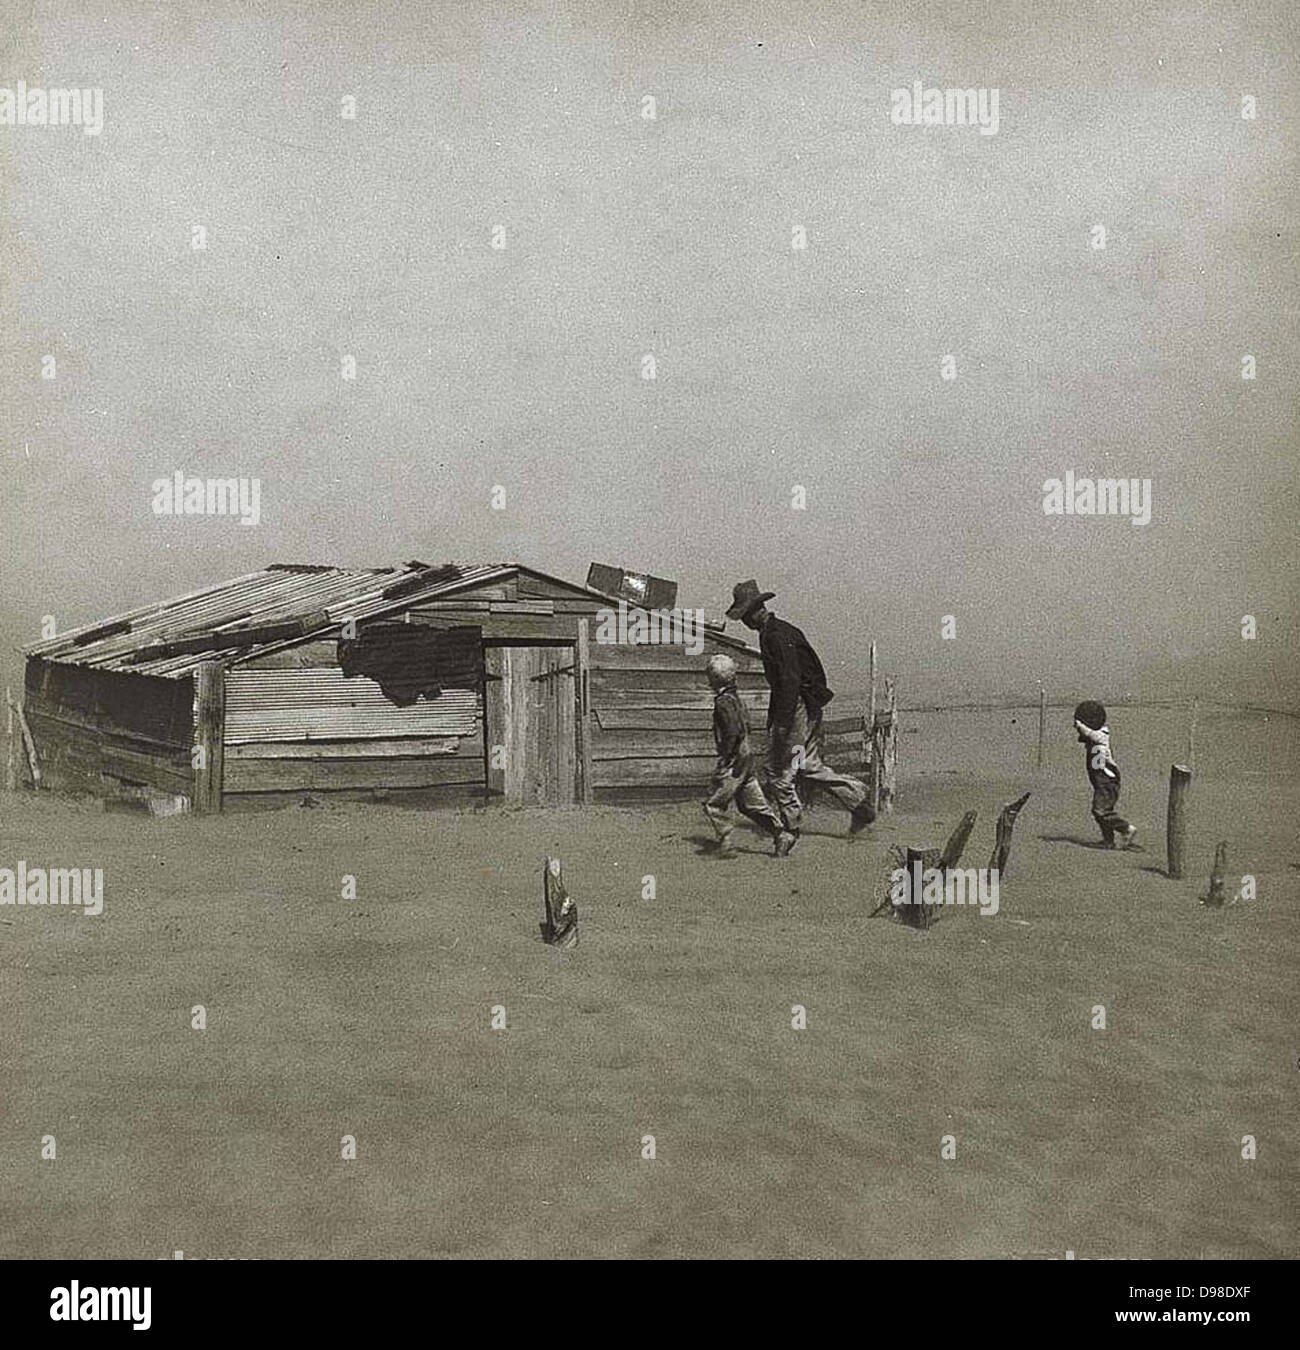 Sturm in der Dust Bowl, Amerika, um 1930. Und jungen Mann zu Fuß in Richtung Holzhütte schrittweise durch Wind geblasen Staub bedeckt. Kleiner Junge hält seine Hand sein Gesicht zu schützen. Stockfoto